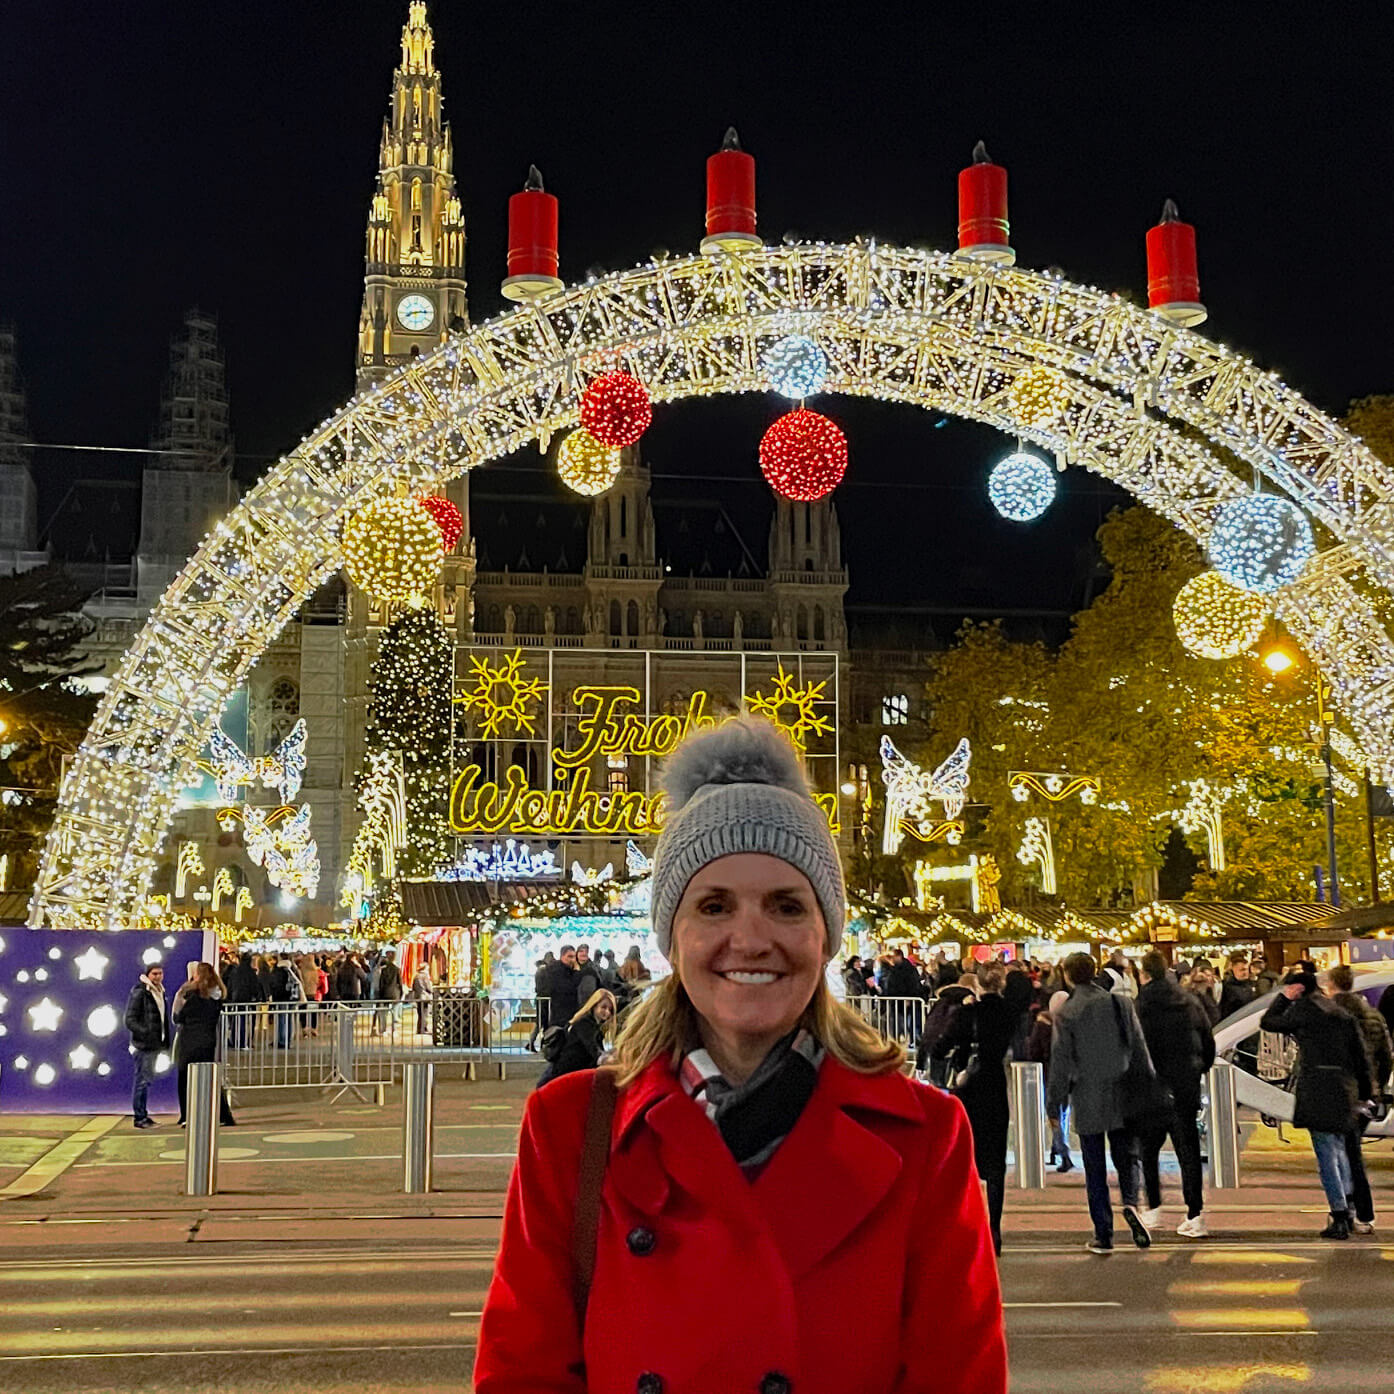 Diane Frisch smiles under a lit up arch at a winter festival in Vienna